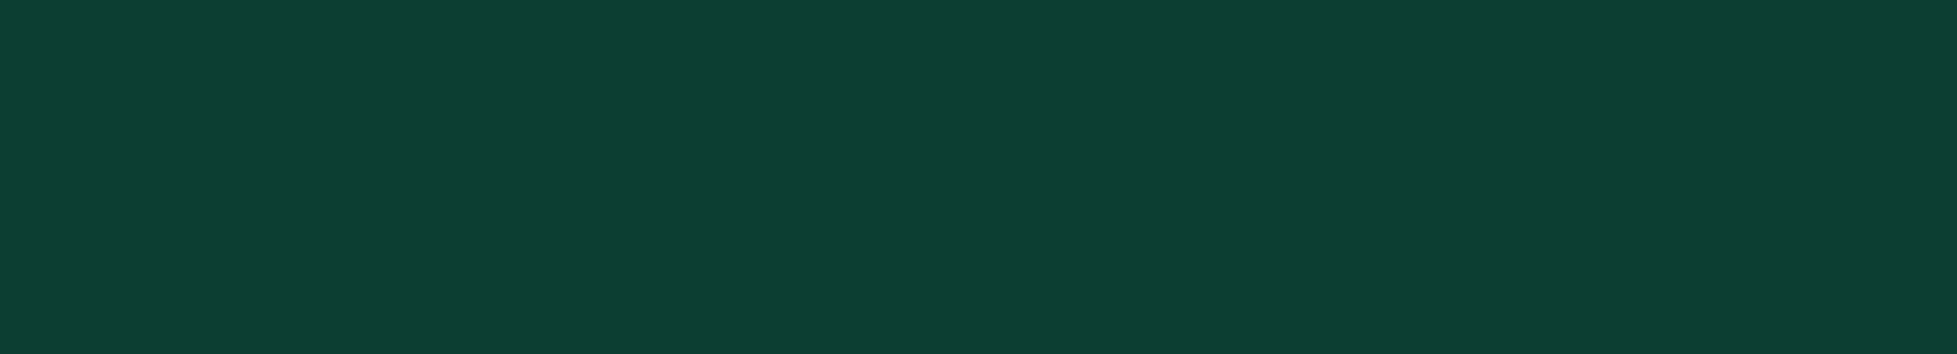 zöld színű lemez